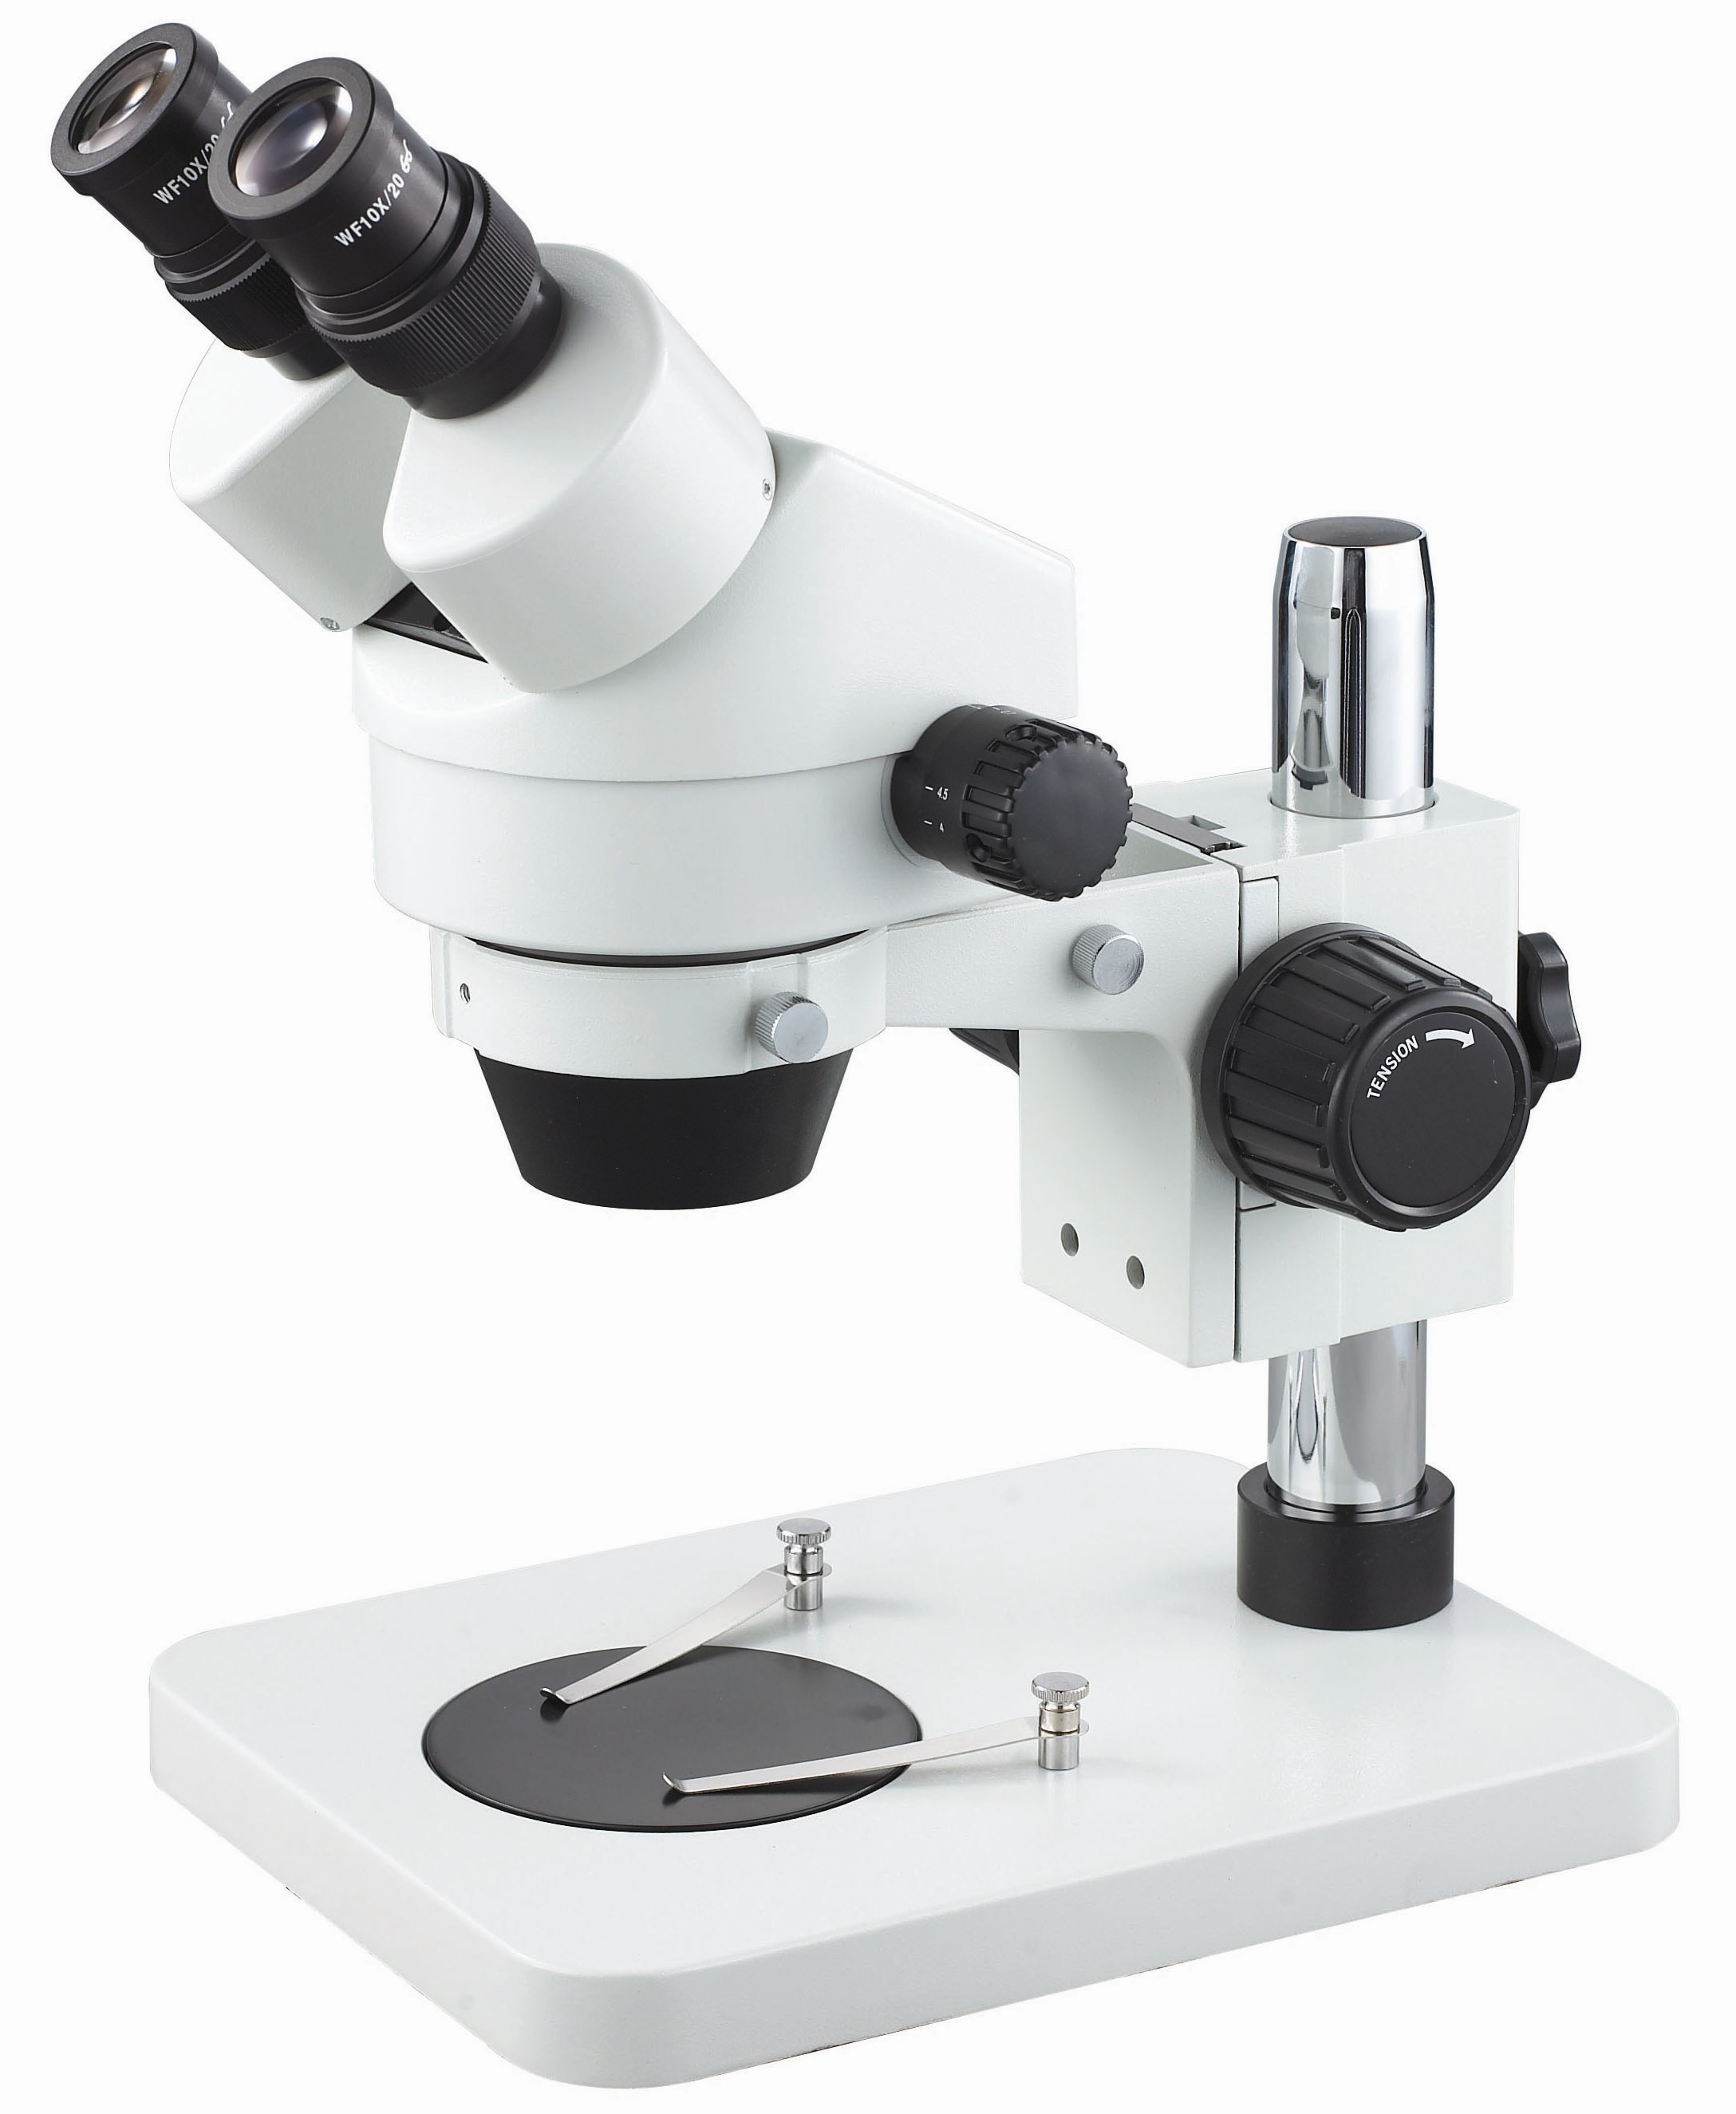 透射电子显微镜----上海微系统与信息技术研究所